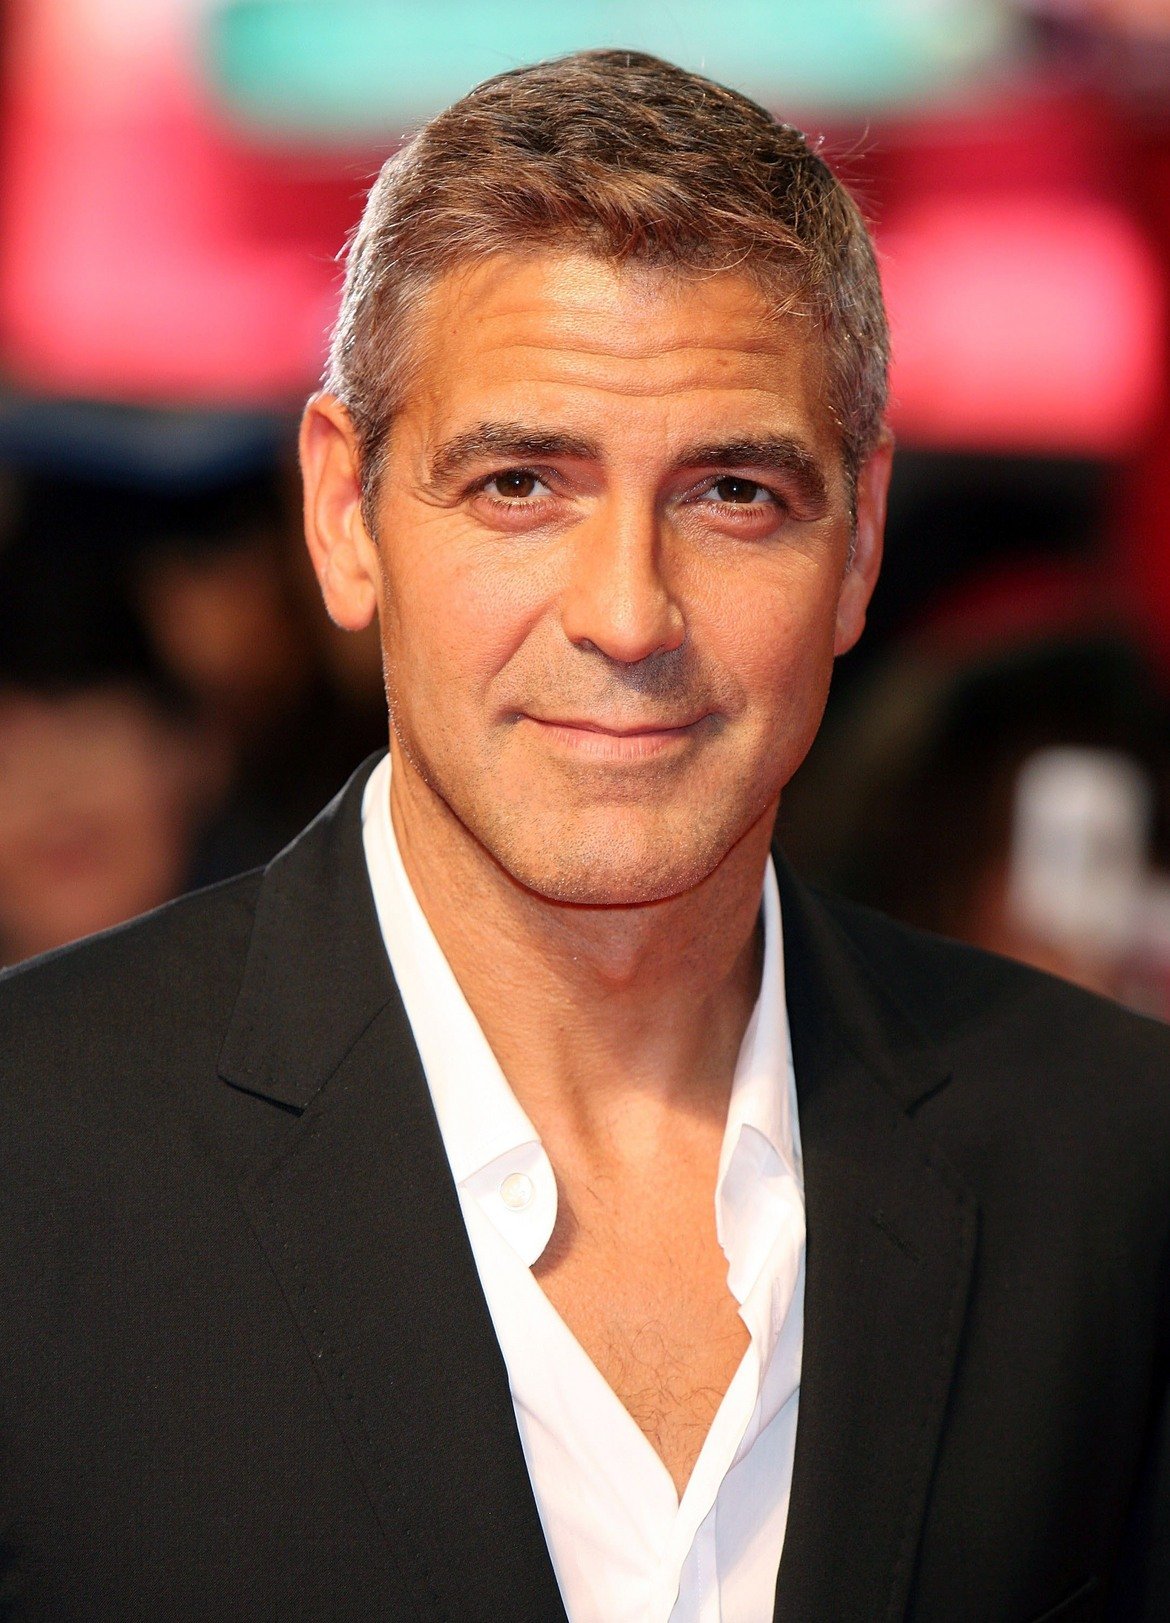  Джордж Клуни 

Напоследък го гледаме повече в реклами на кафе, отколкото в пълнометражни хитове, но продължаваме да смятаме, че Клуни е супер сексапилен. Доктор Де Силва подкрепя това твърдение с факти - лицето на актьора дава 89,91 на сто според Златното сечение. За почти съвършени при него се смятат носа и формата на лицето.